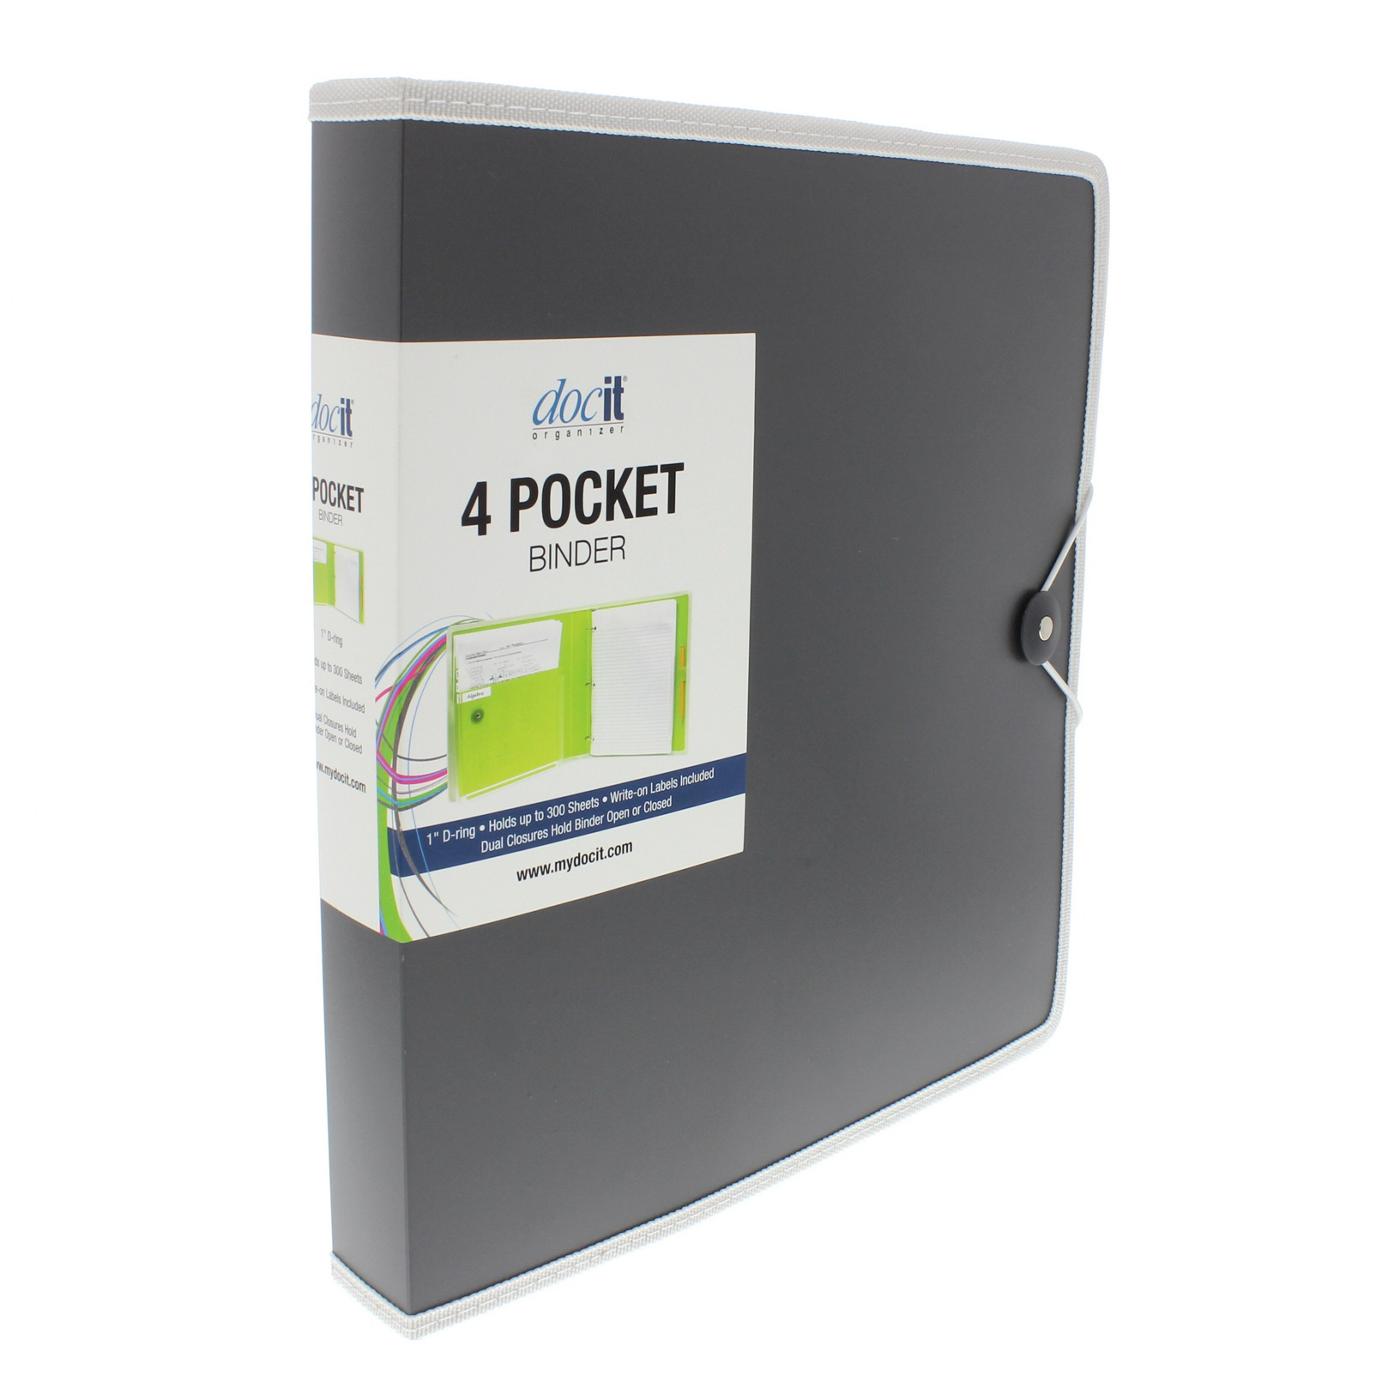 DocIt Organizer 4 Pocket Binder, Multi Pocket Folder And 1-Inch 3 Ring Binder; image 3 of 4